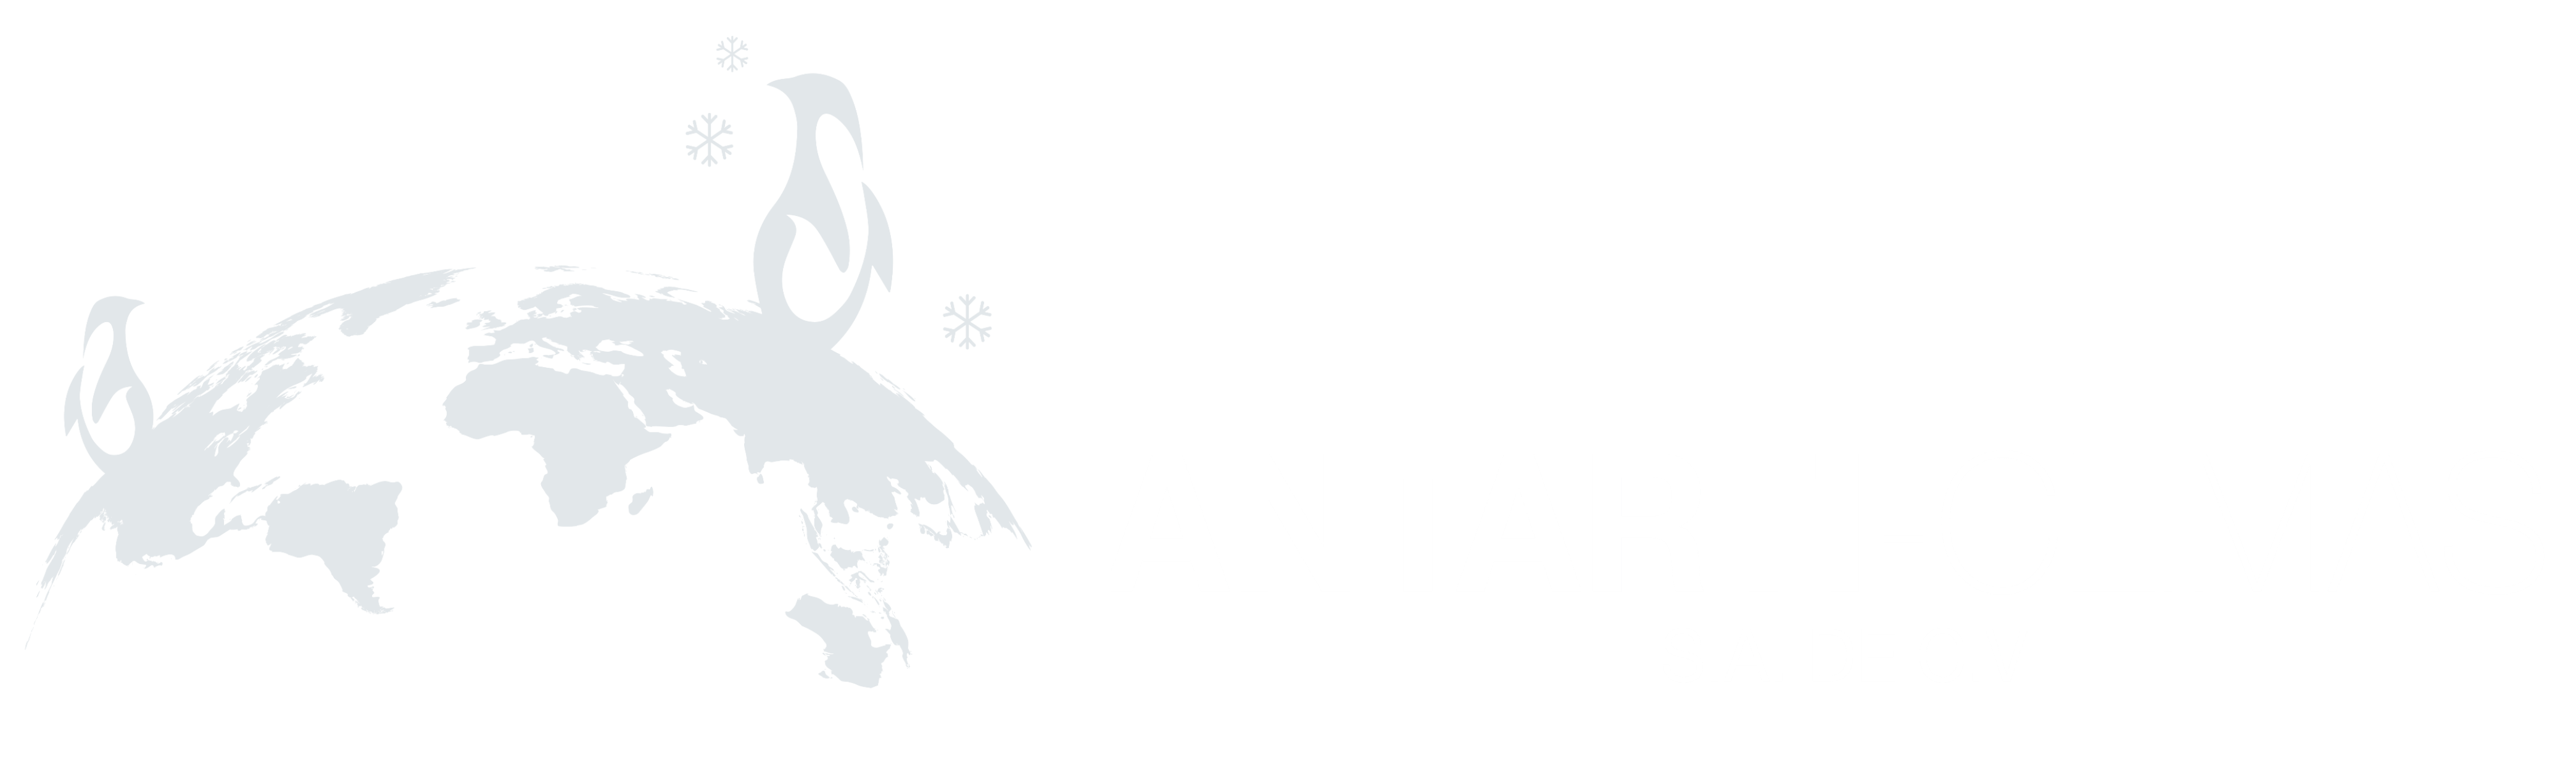 Antarti-climas